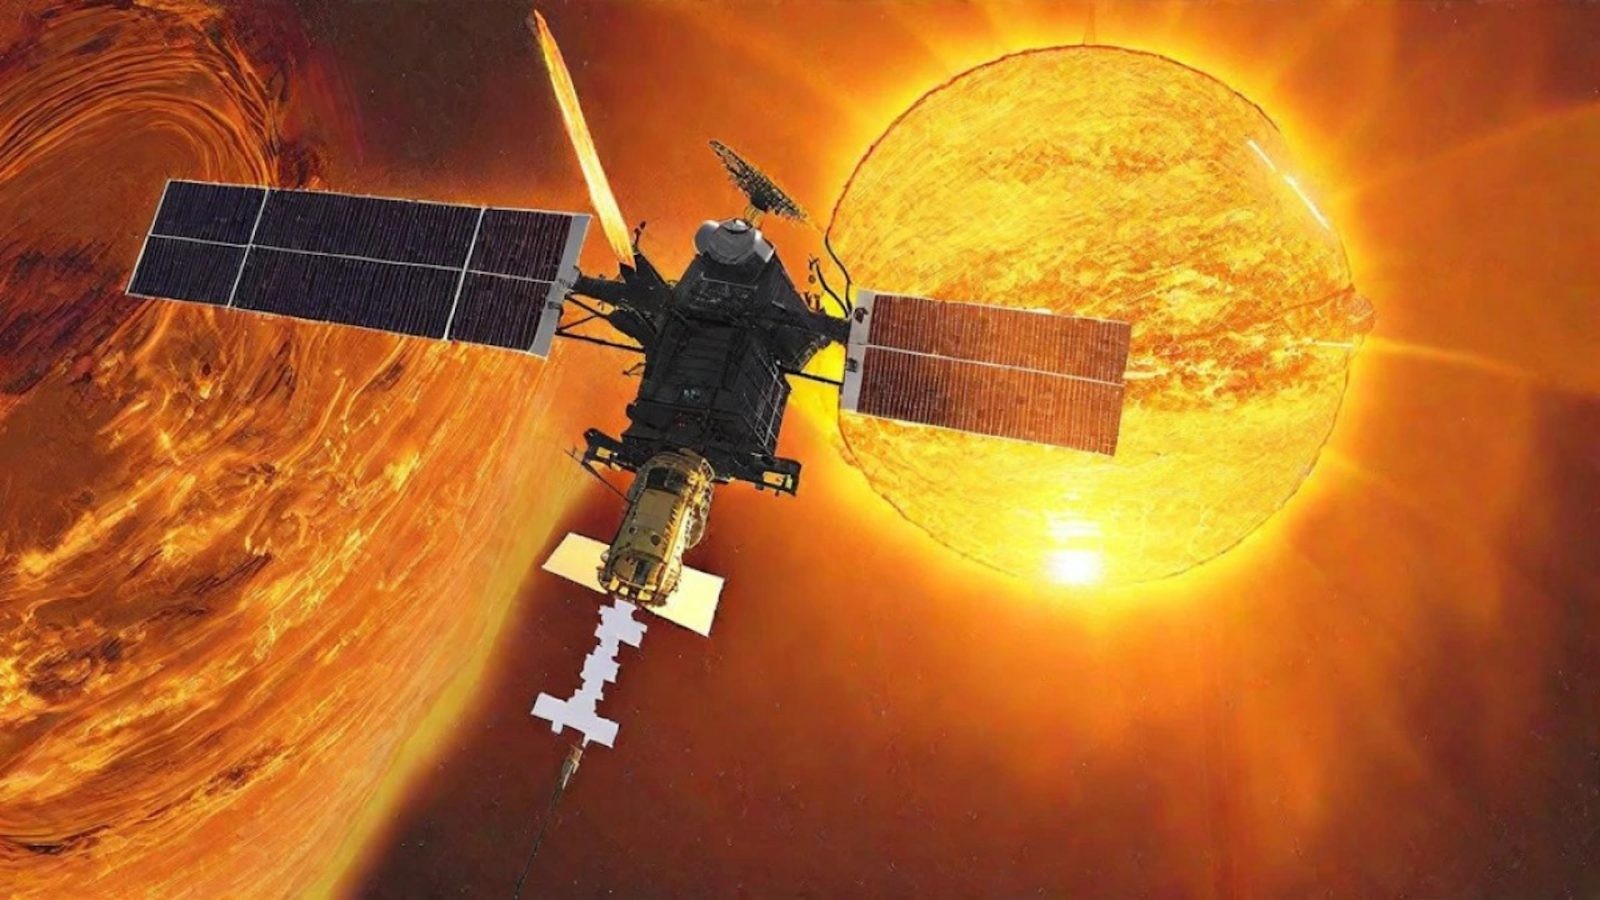 Indyjska sonda kosmiczna badająca Słońce dotarła do celu. To duży krok dla Indii